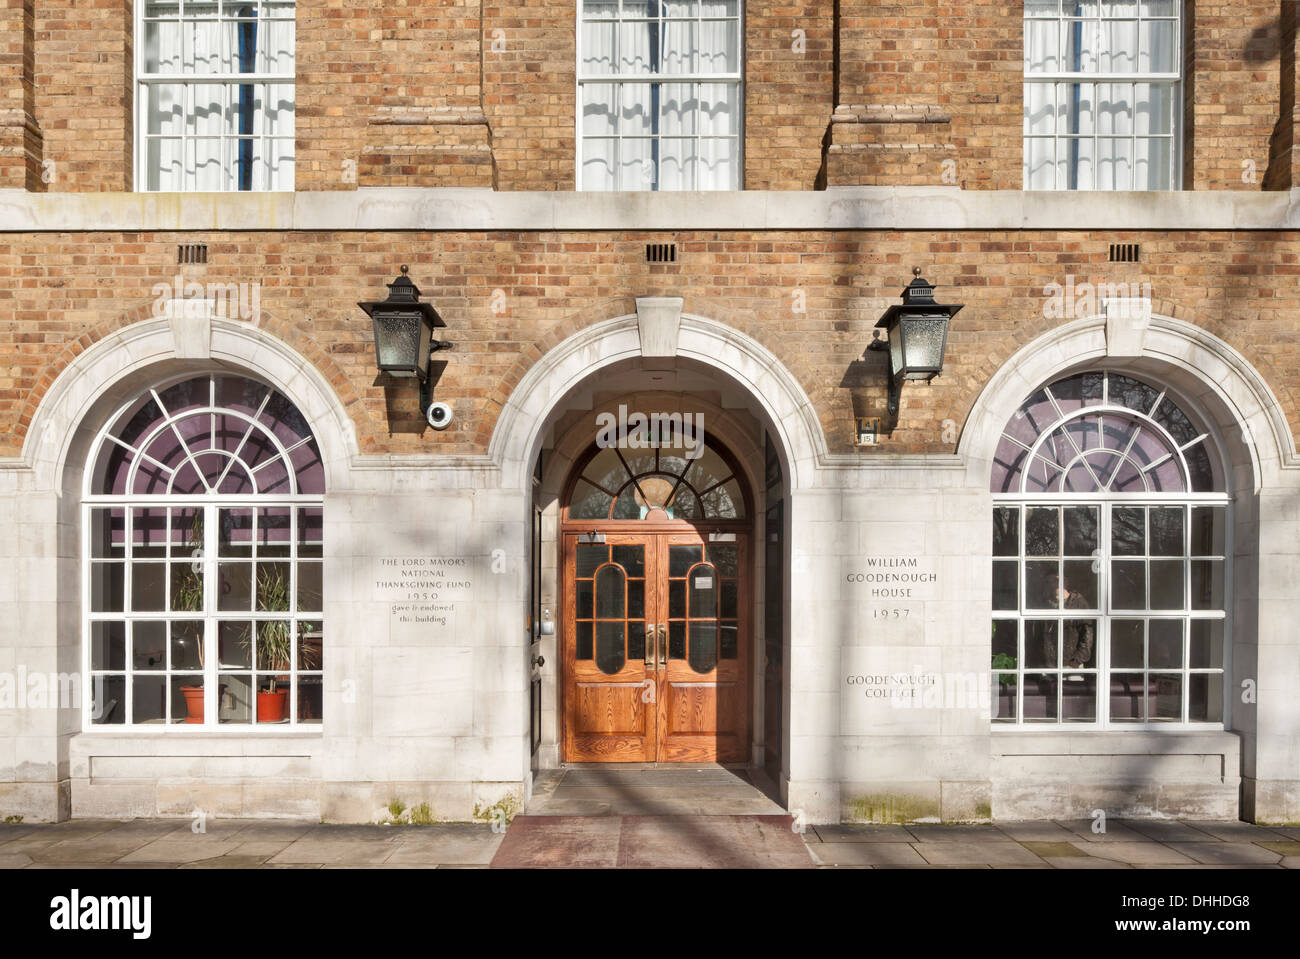 William Goodenough Chambre à Goodenough College, Londres, Royaume-Uni. Architecte : Wilson Mason et partenaires, 2013. Entrée privée. Banque D'Images